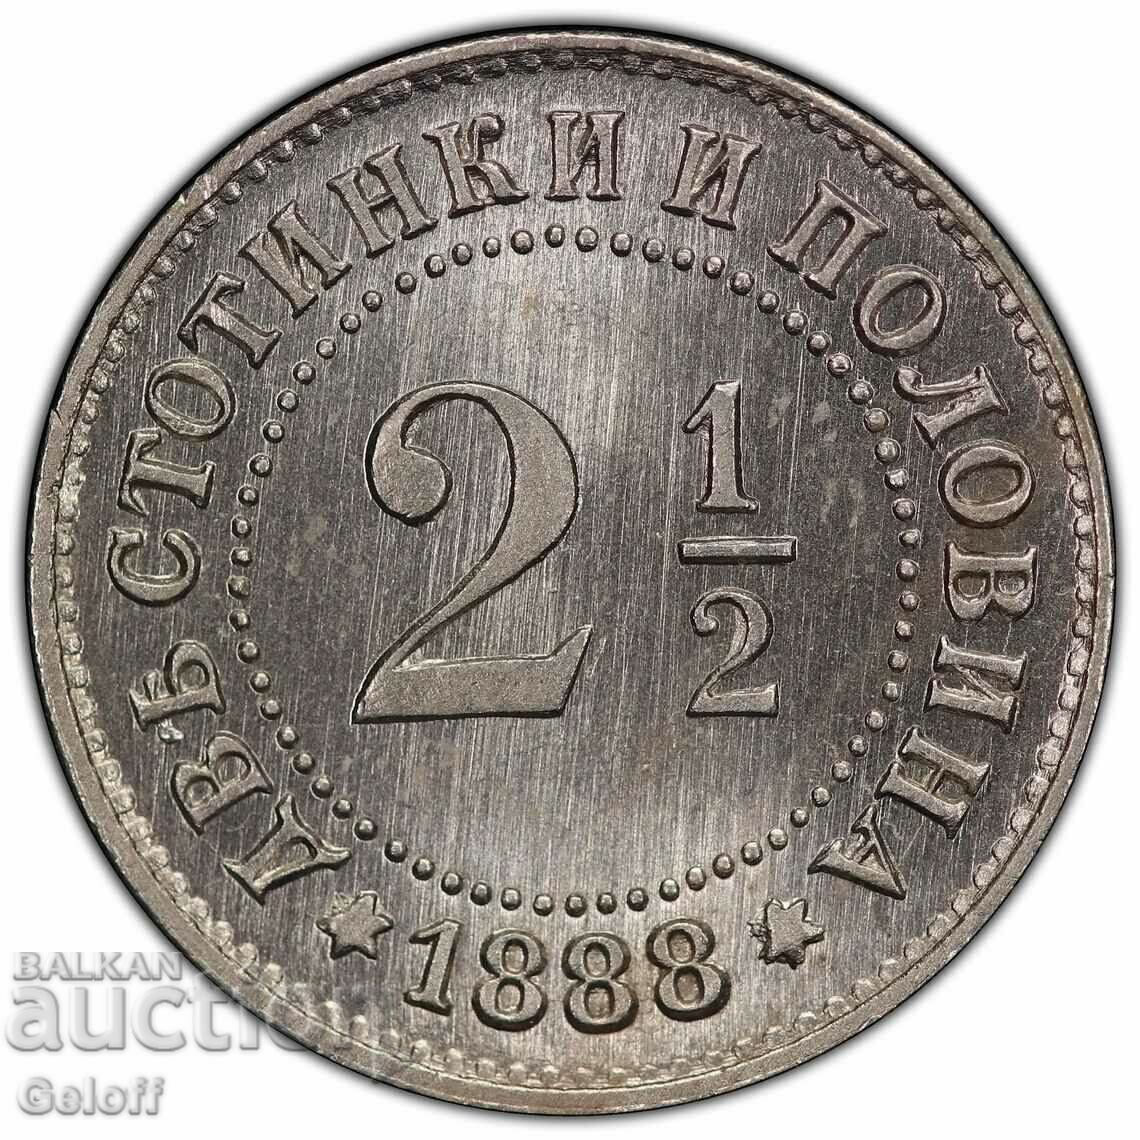 2 1/2 cenți 1888, MS66